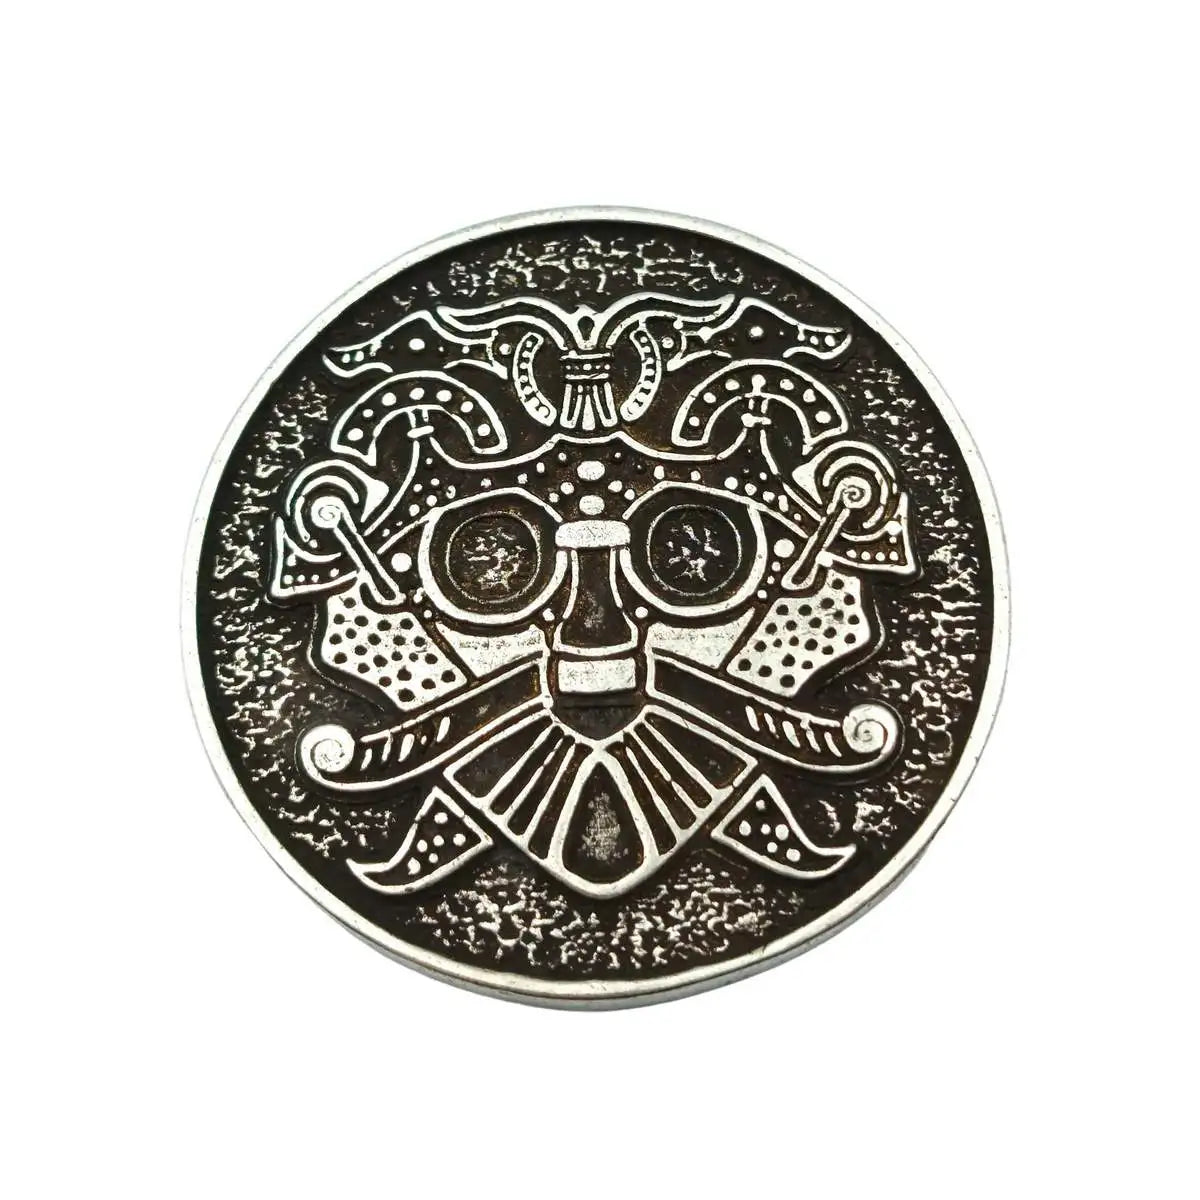 Kaupaloki bronze coin Silver plated  